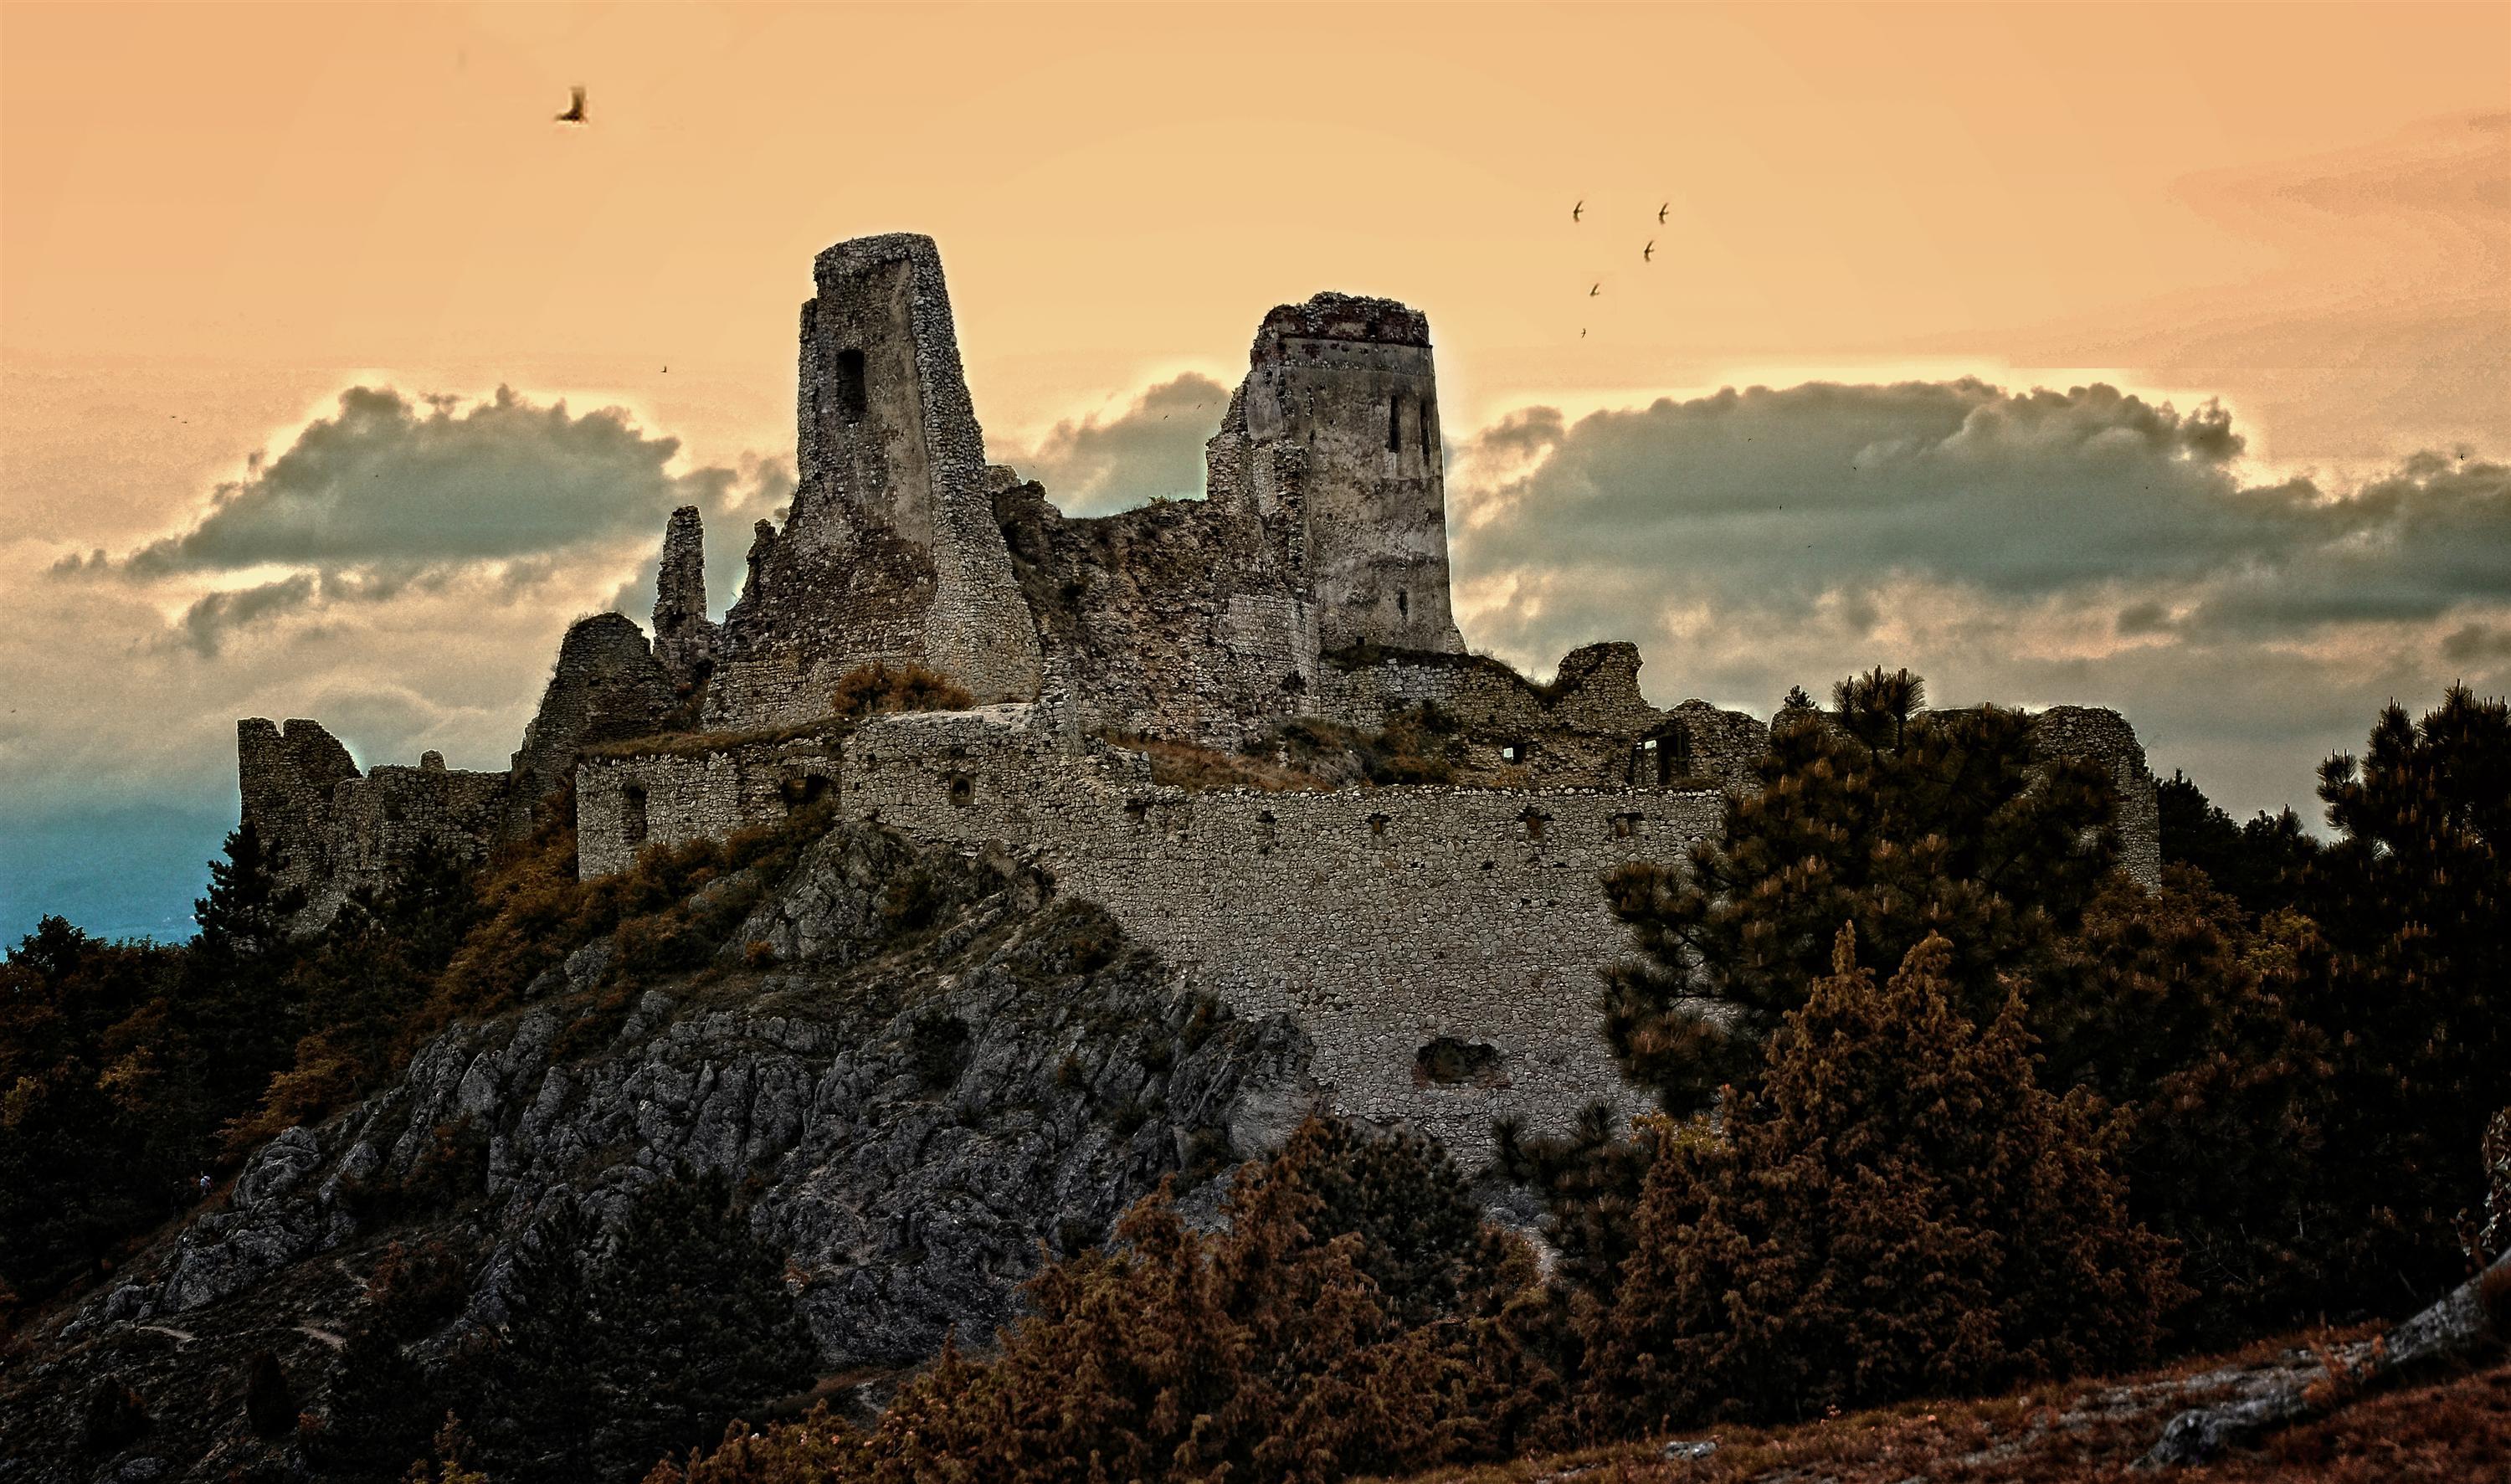 Bí ẩn lâu đài 'tắm máu' Cachtice, nỗi sợ hãi ngàn đời của trinh nữ thế kỷ 16-4